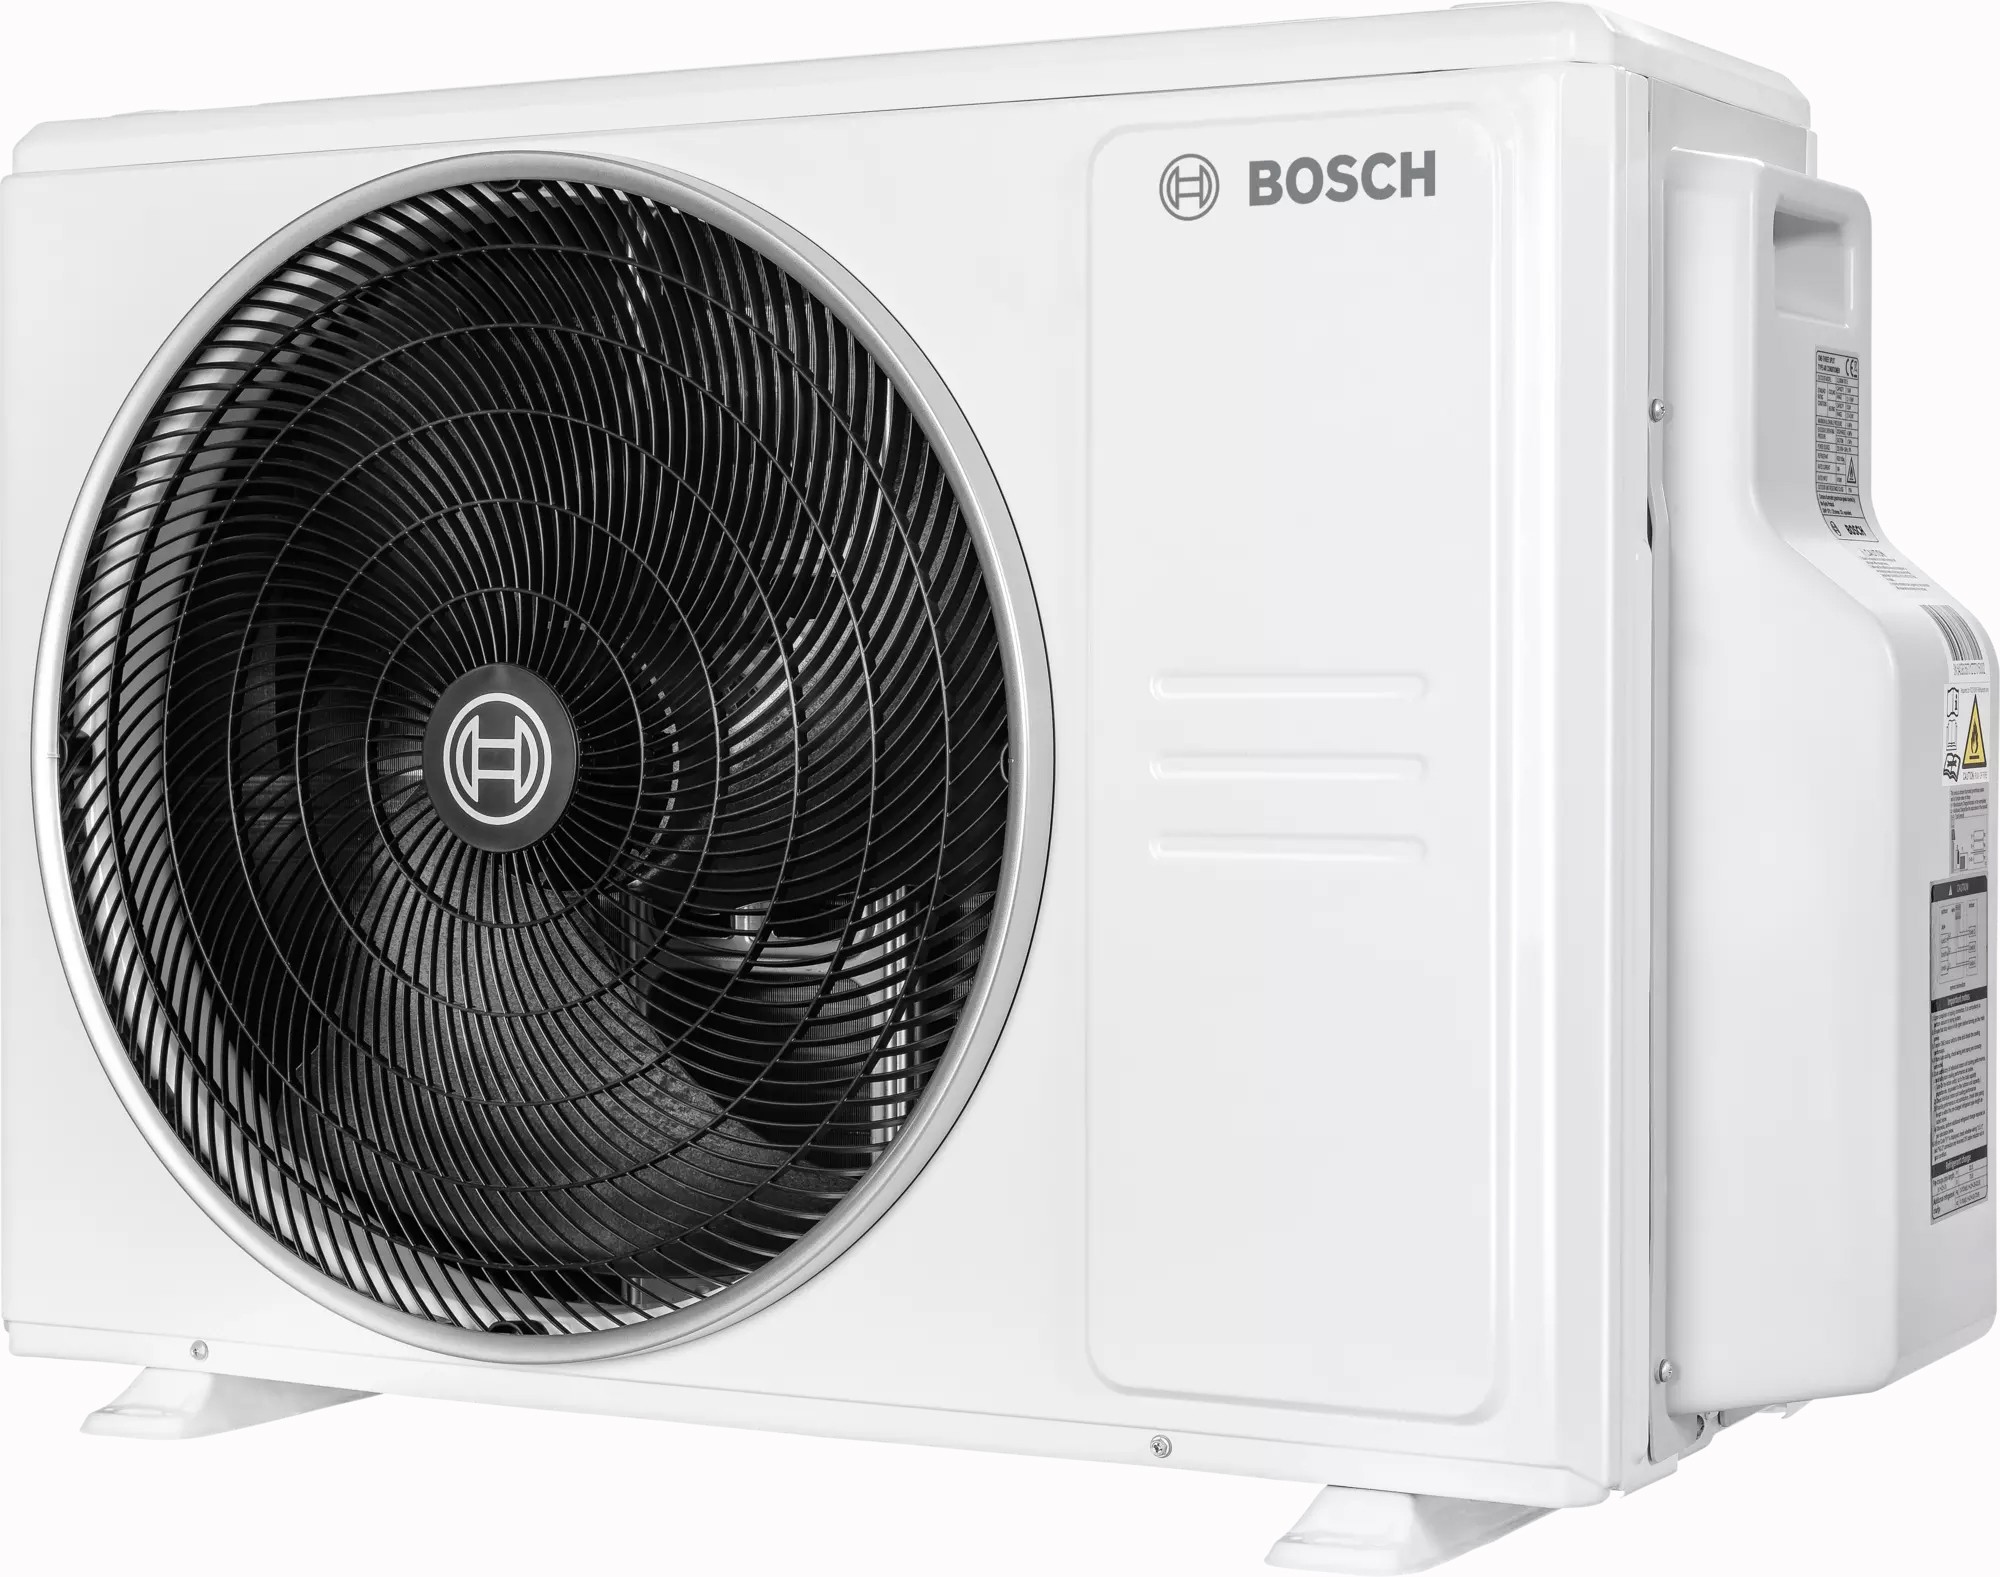 в продаже Наружный блок мультисплит-системы Bosch CL5000M 82/4 E, 8,2 кВт - фото 3